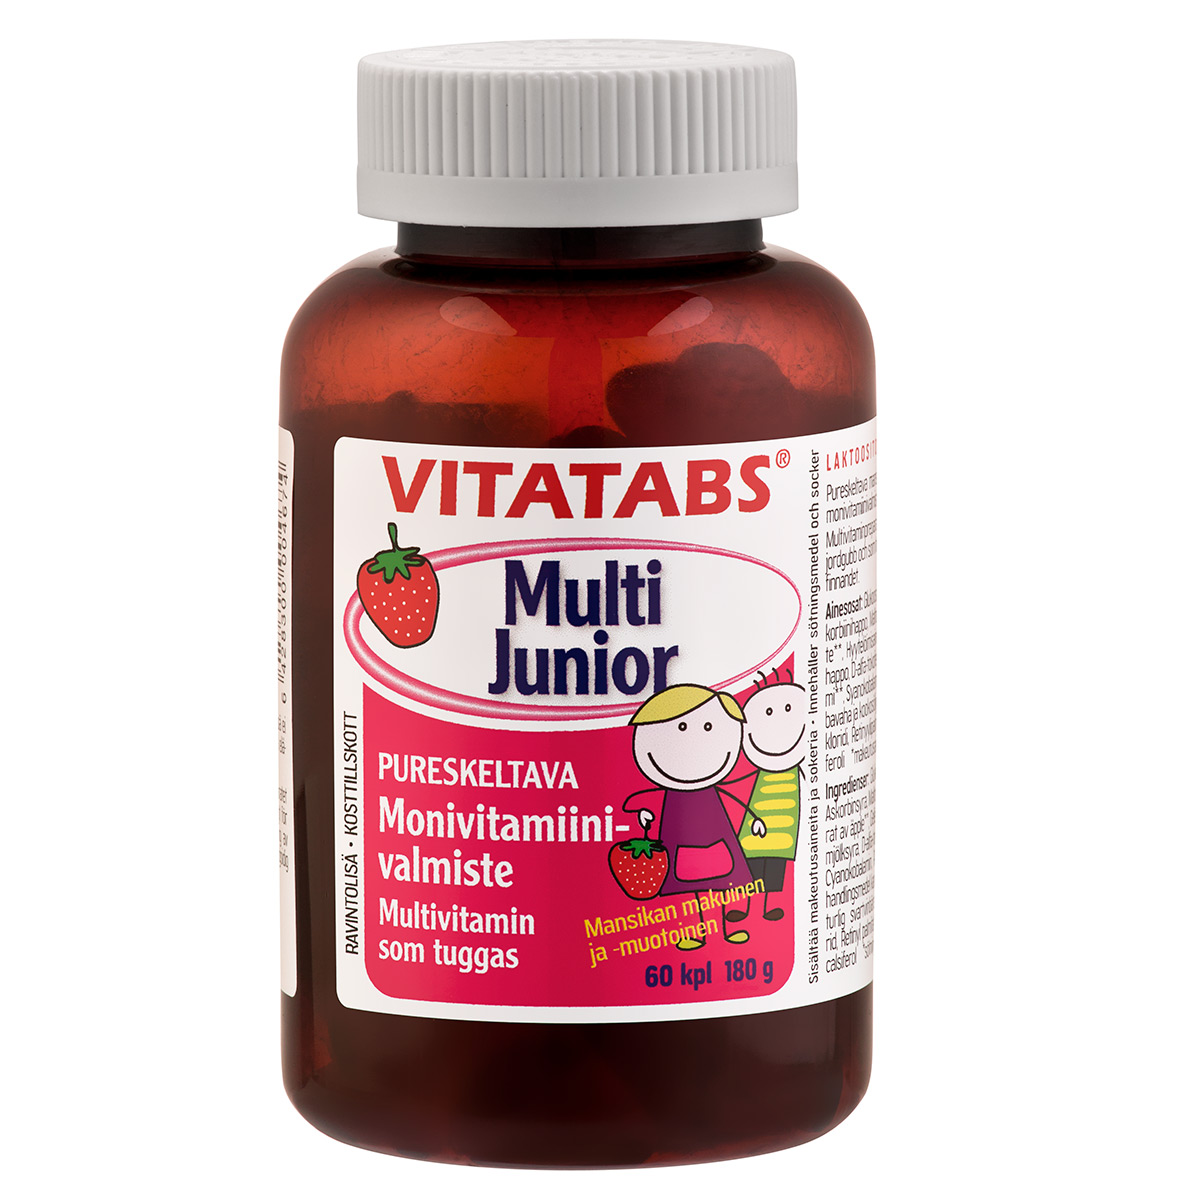 Vitatabs Multi Junior 60kp l/180g